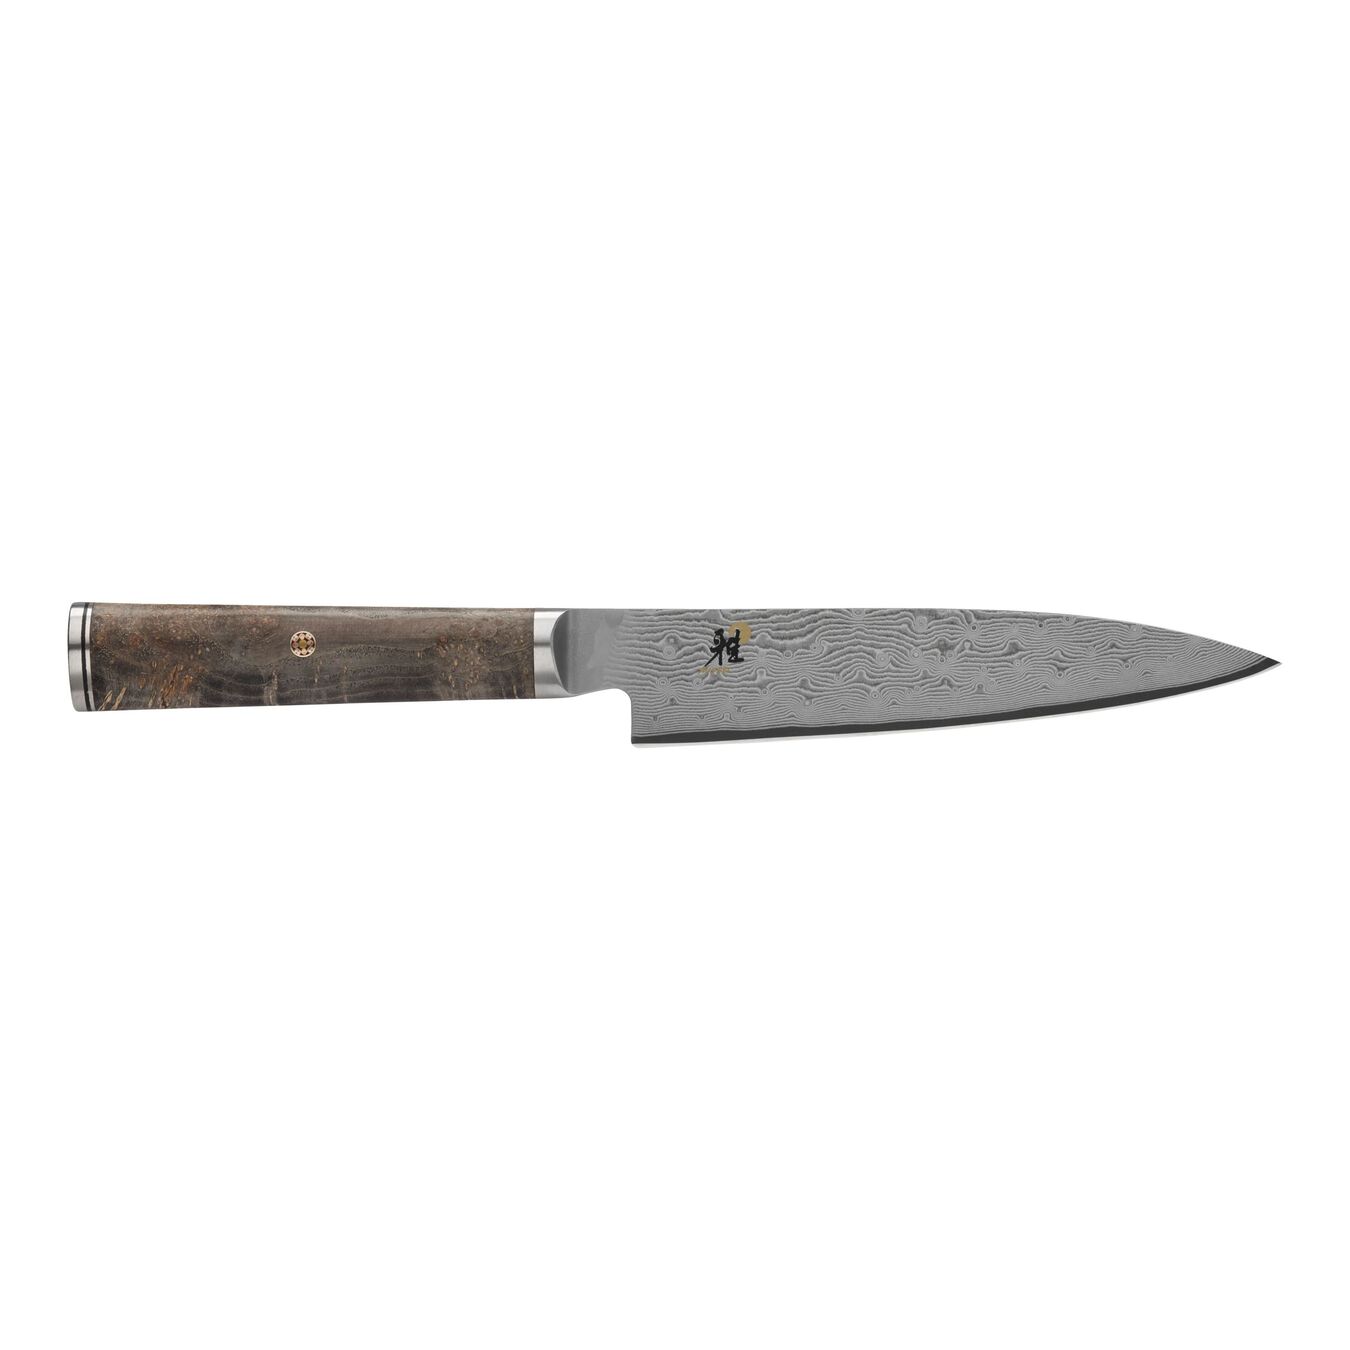 6-inch black maple Utility Knife,,large 1